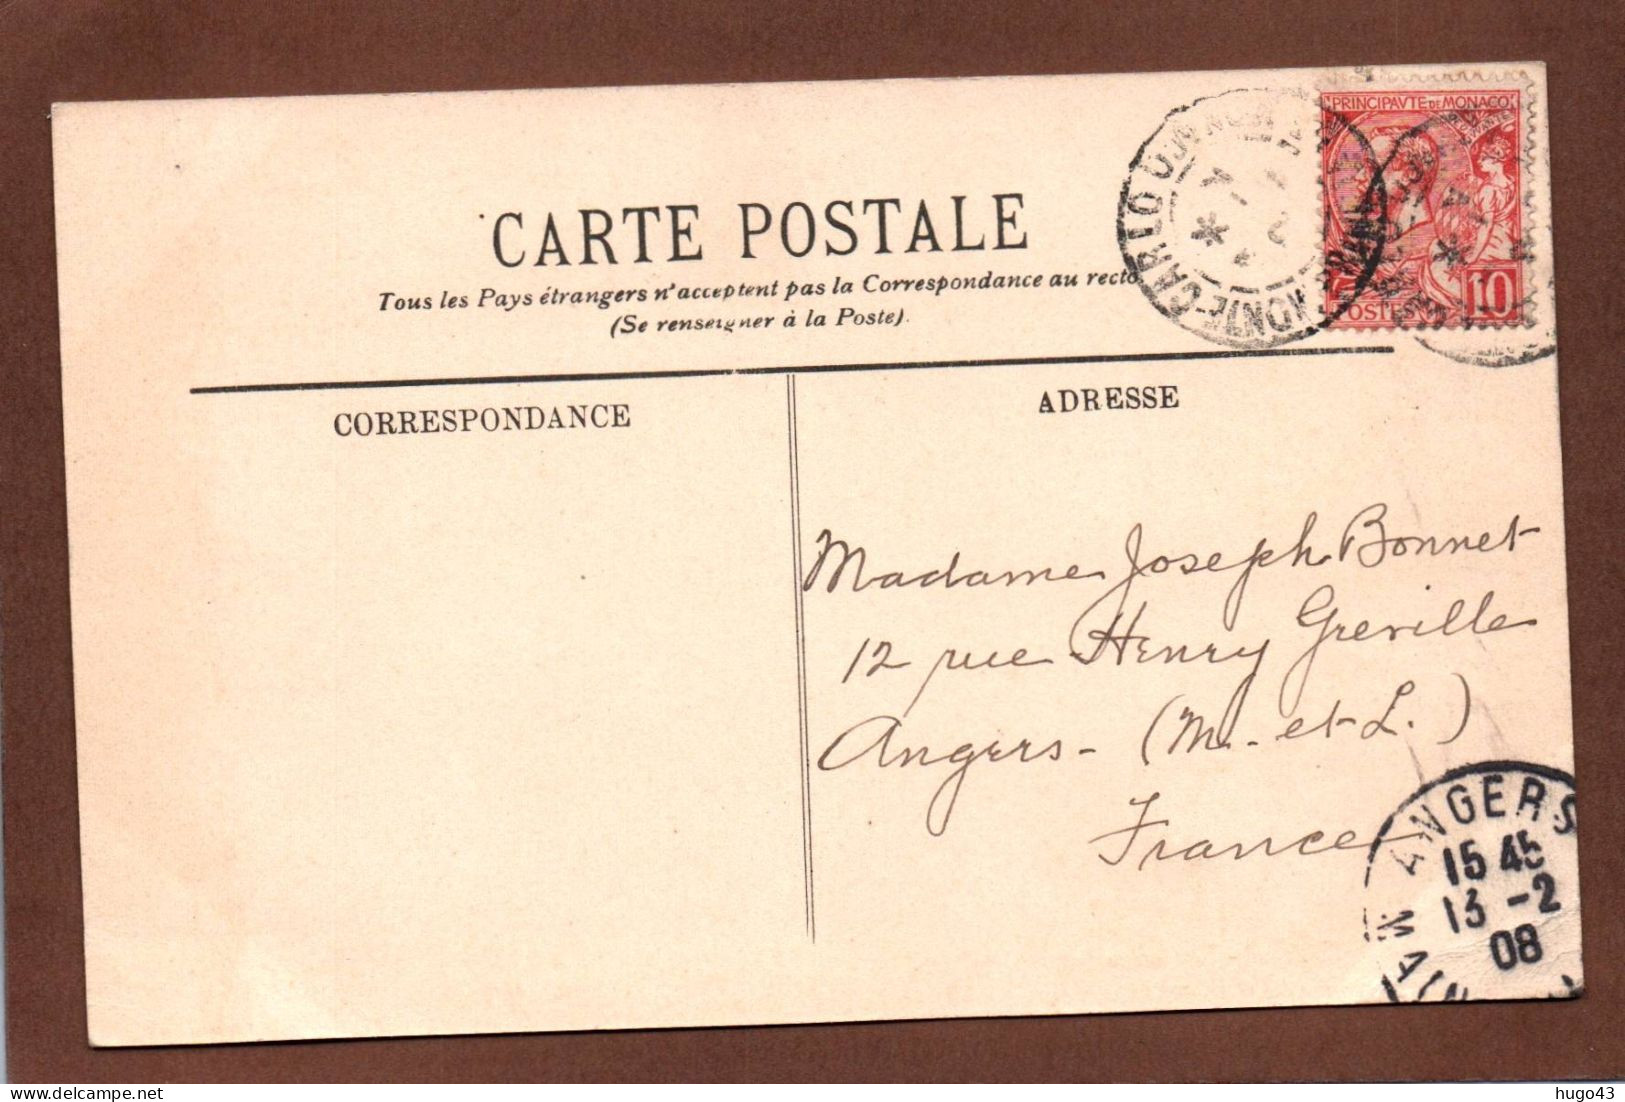 (RECTO / VERSO) MONTE CARLO EN 1908 - N° 962 - LE CASINO ET HOTEL DE PARIS - BEAU CACHET ET TIMBRE DE MONACO - CPA - Hôtels